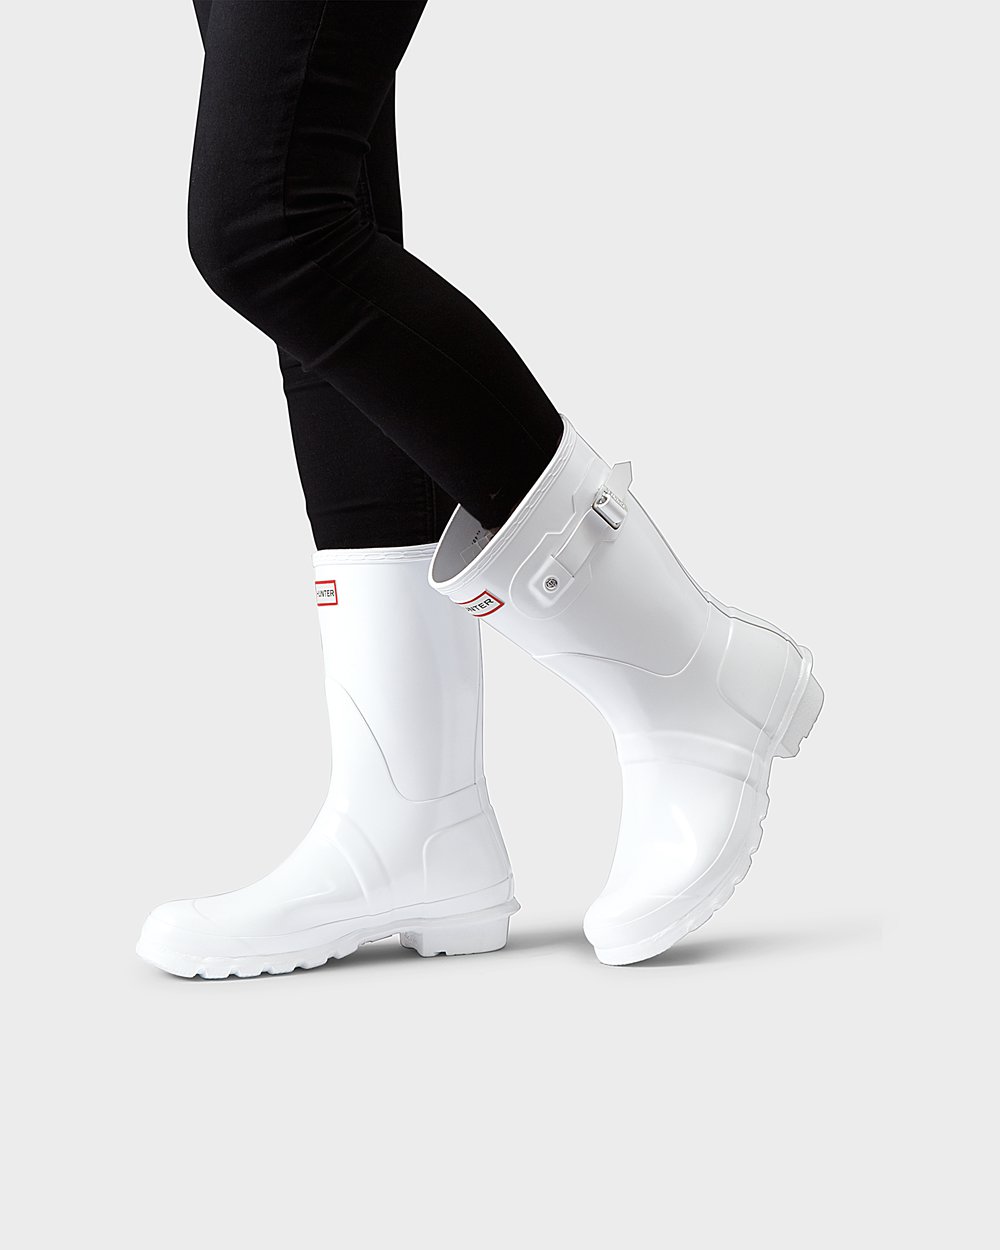 Womens Short Rain Boots - Hunter Original Gloss (39KFGUEPQ) - White